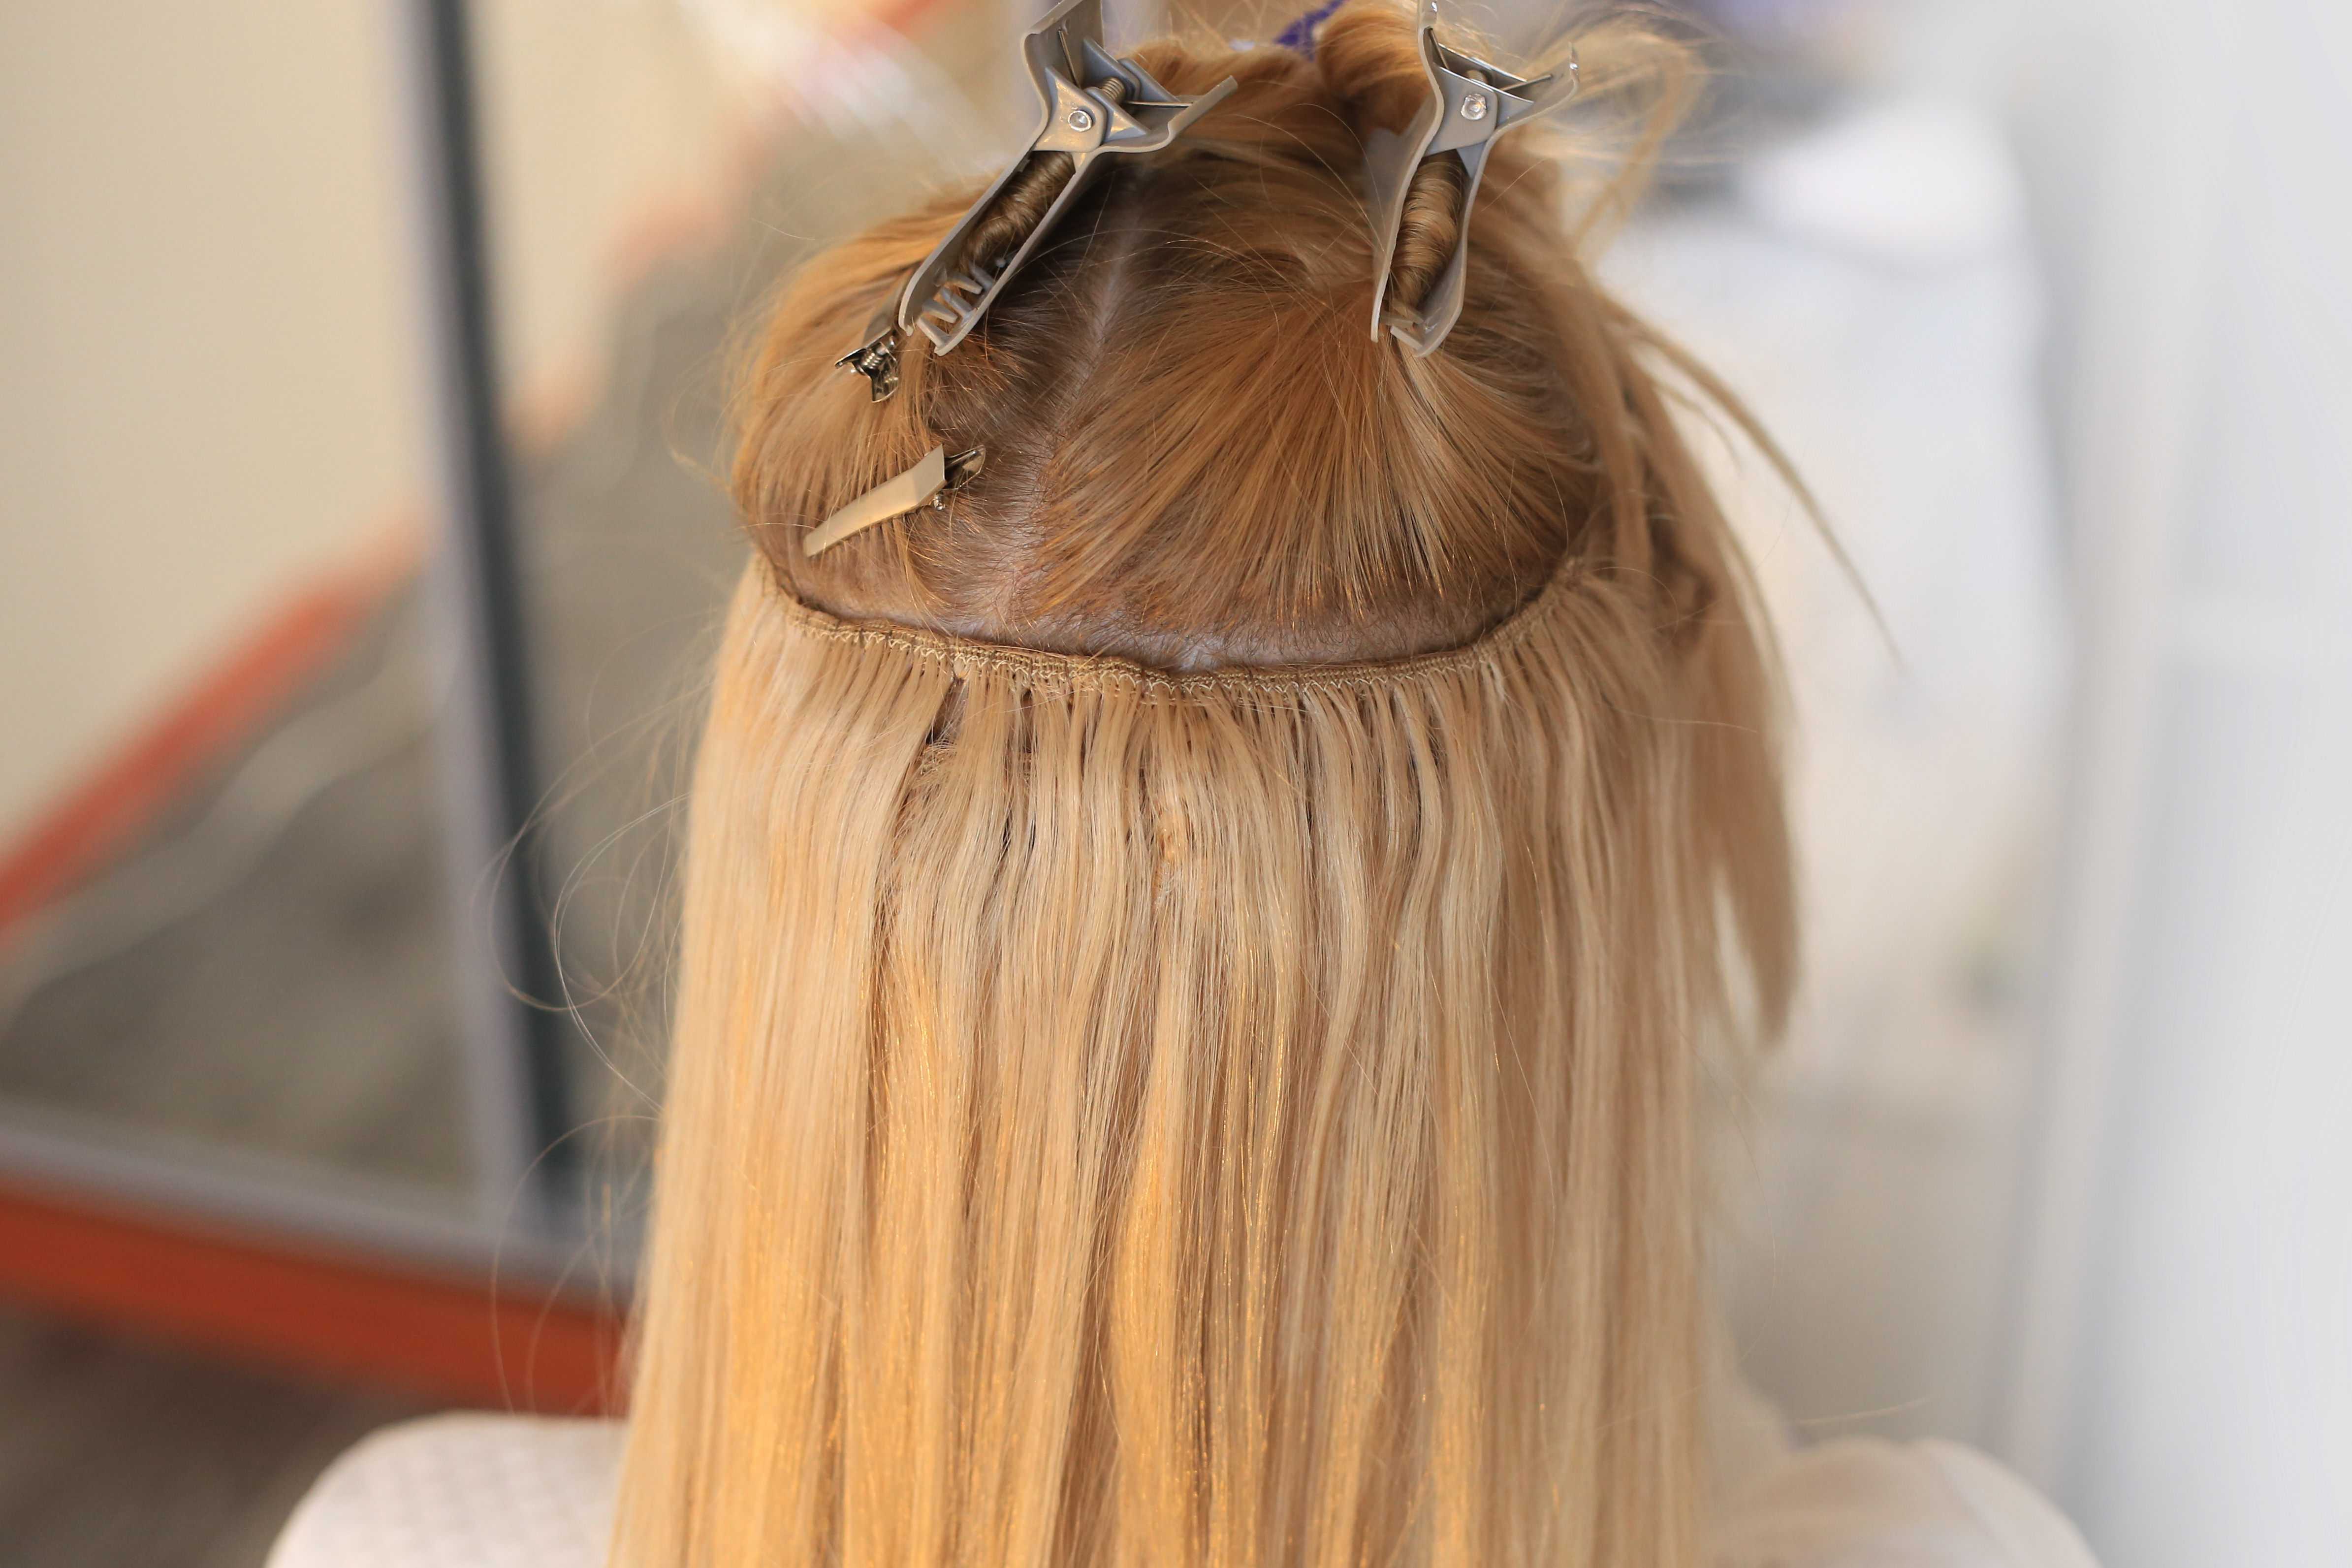 Афронаращивание волос французская технология наращивания на трессах. африканское наращивание волос фото гелевого наращивания